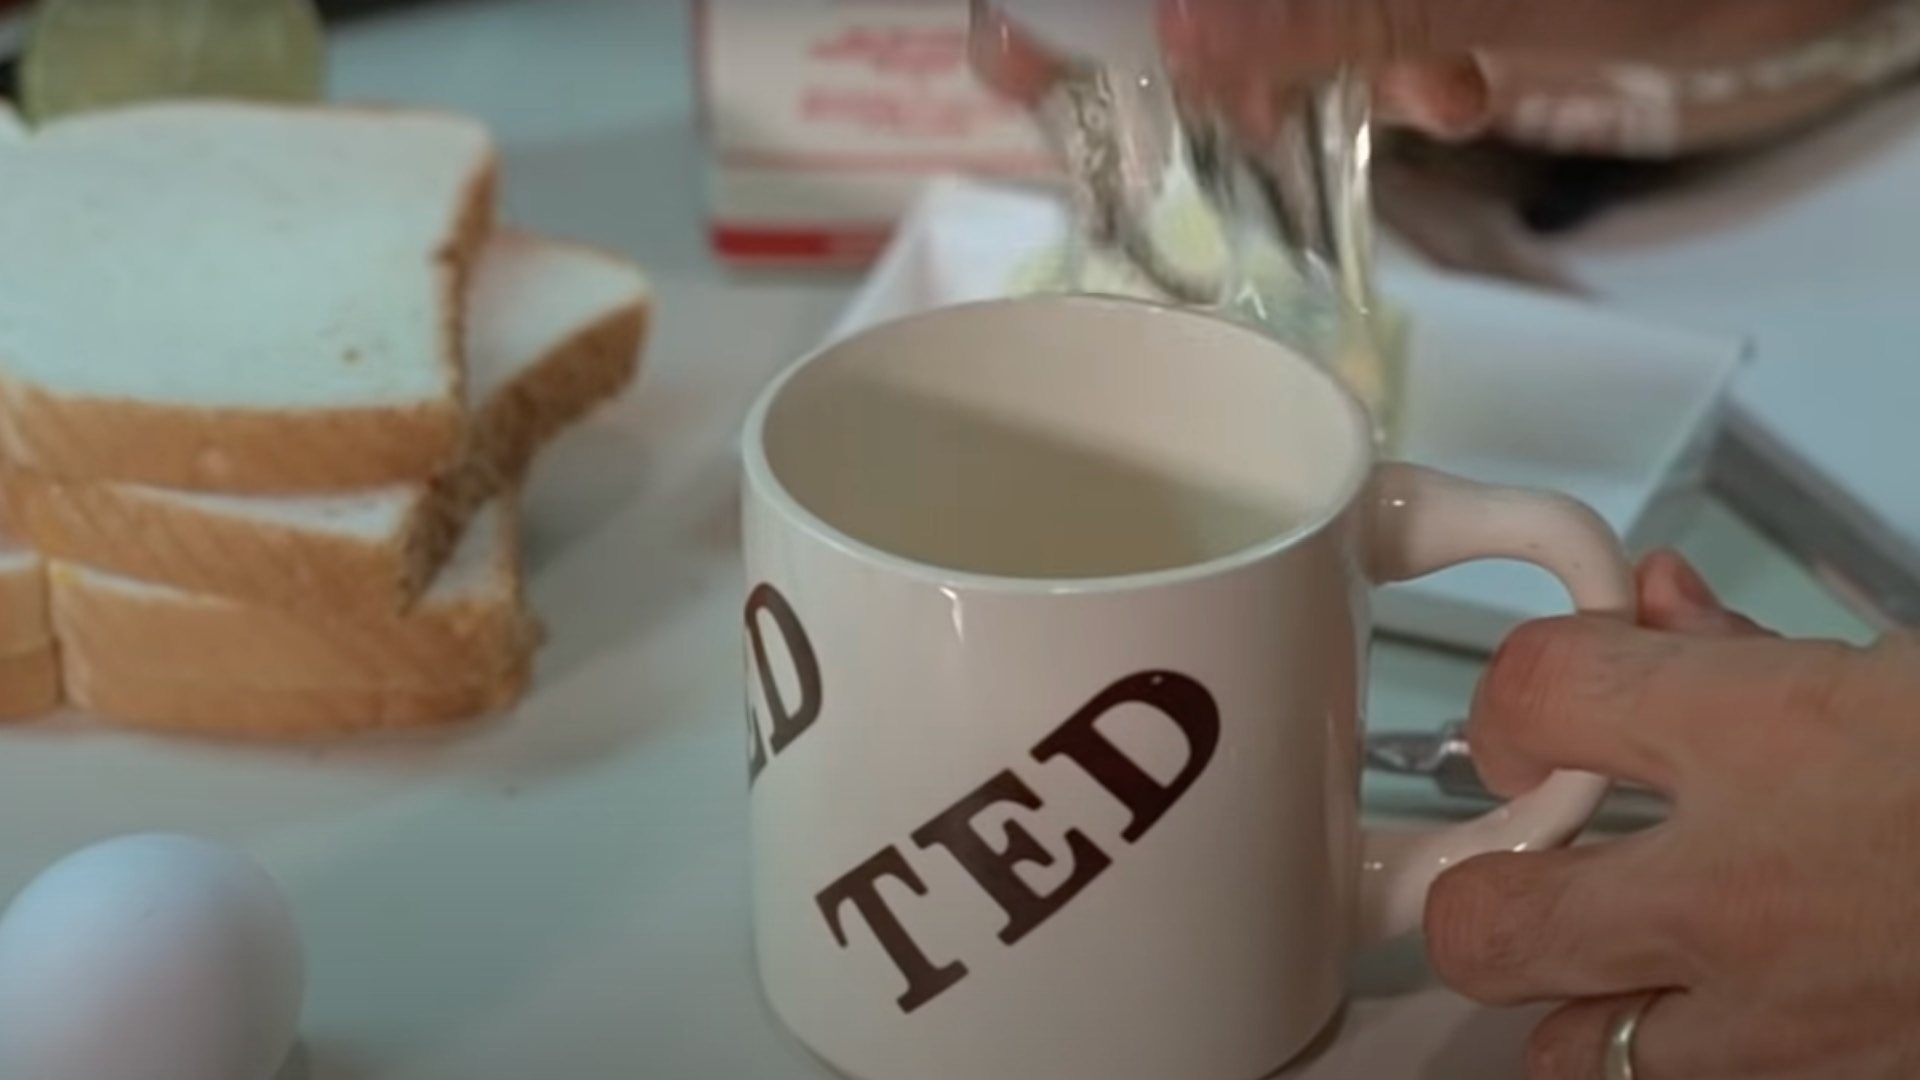 KRAMER VS. KRAMER film still of a white mug, an egg, and a stack of bread on a table